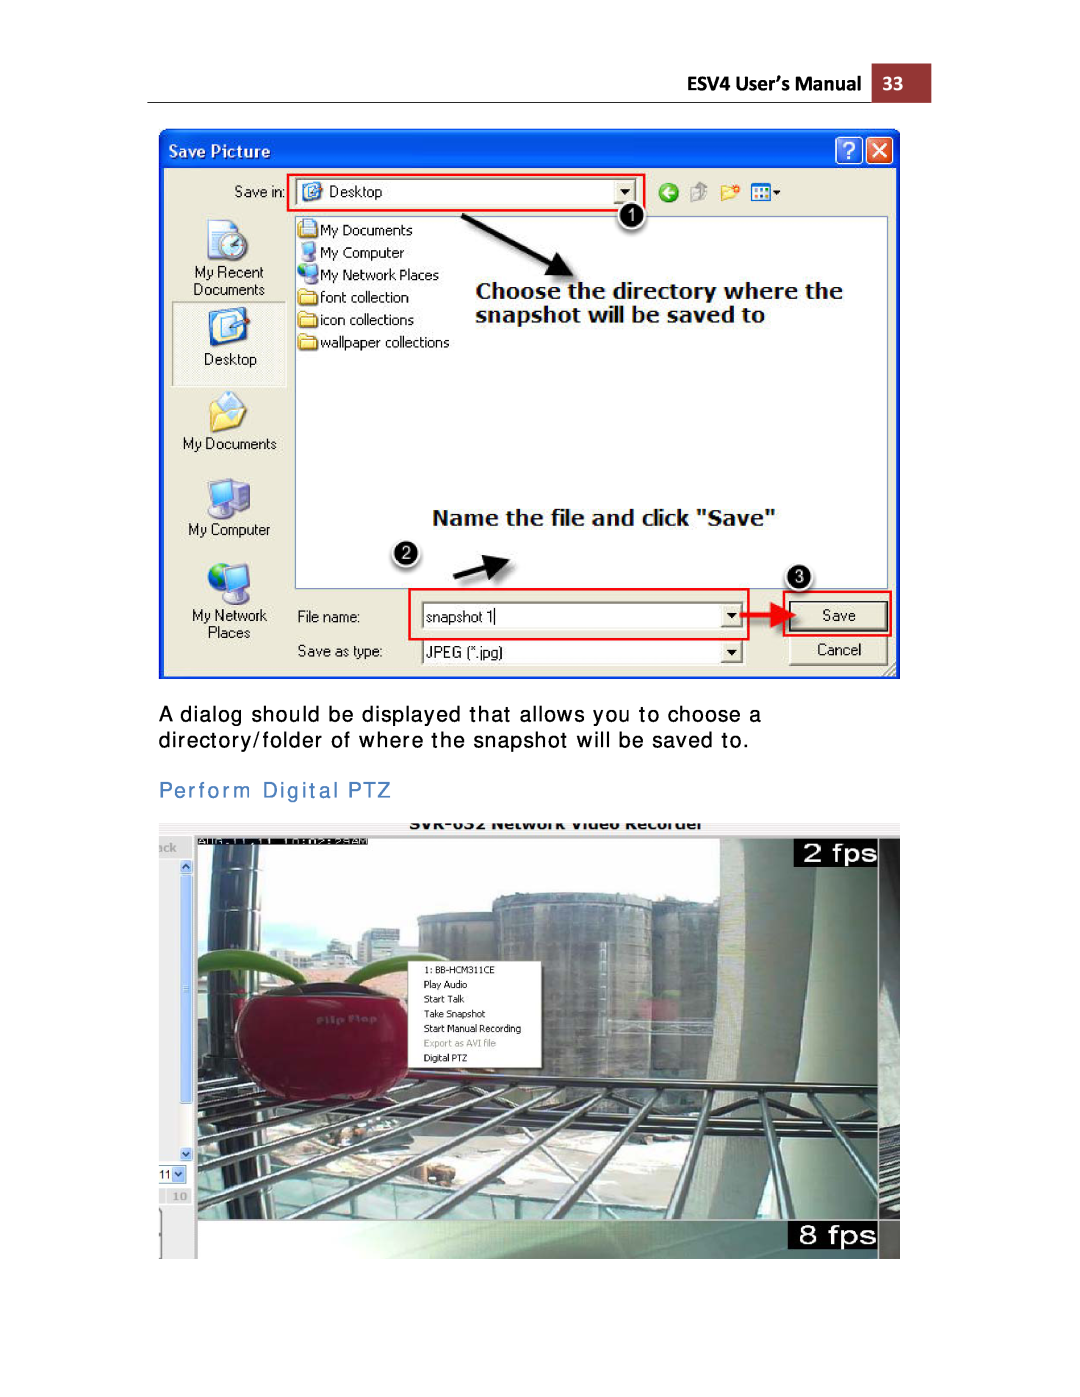 Toshiba ESV41T user manual Perform Digital PTZ, ESV4 User’s Manual 